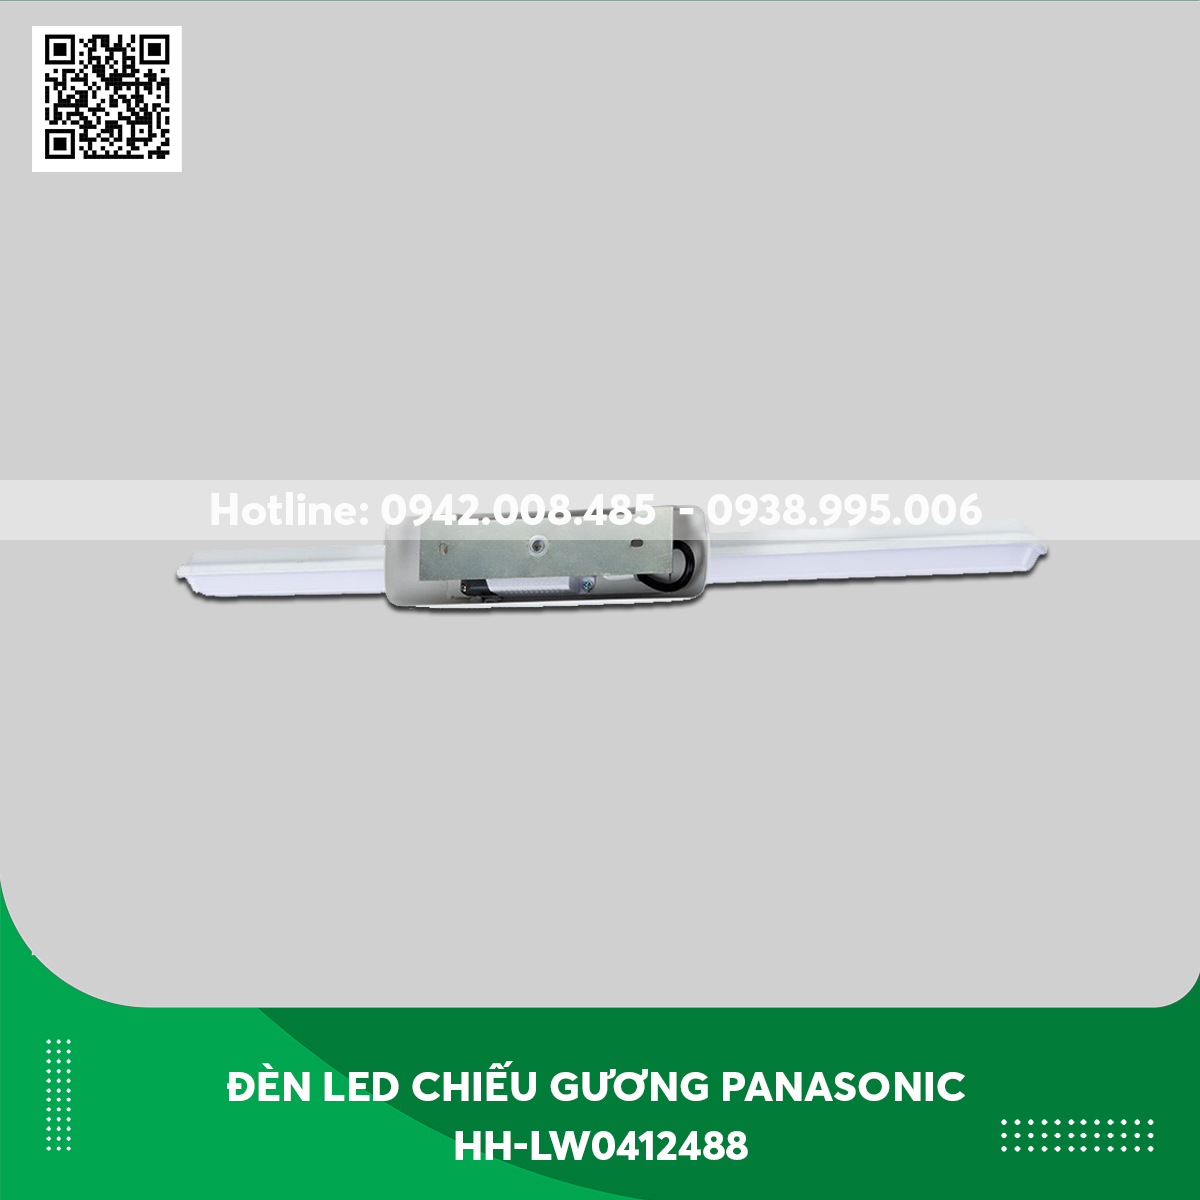 Đèn Led Chiếu Gương Panasonic HH-LW0412488 màu trắng sữa